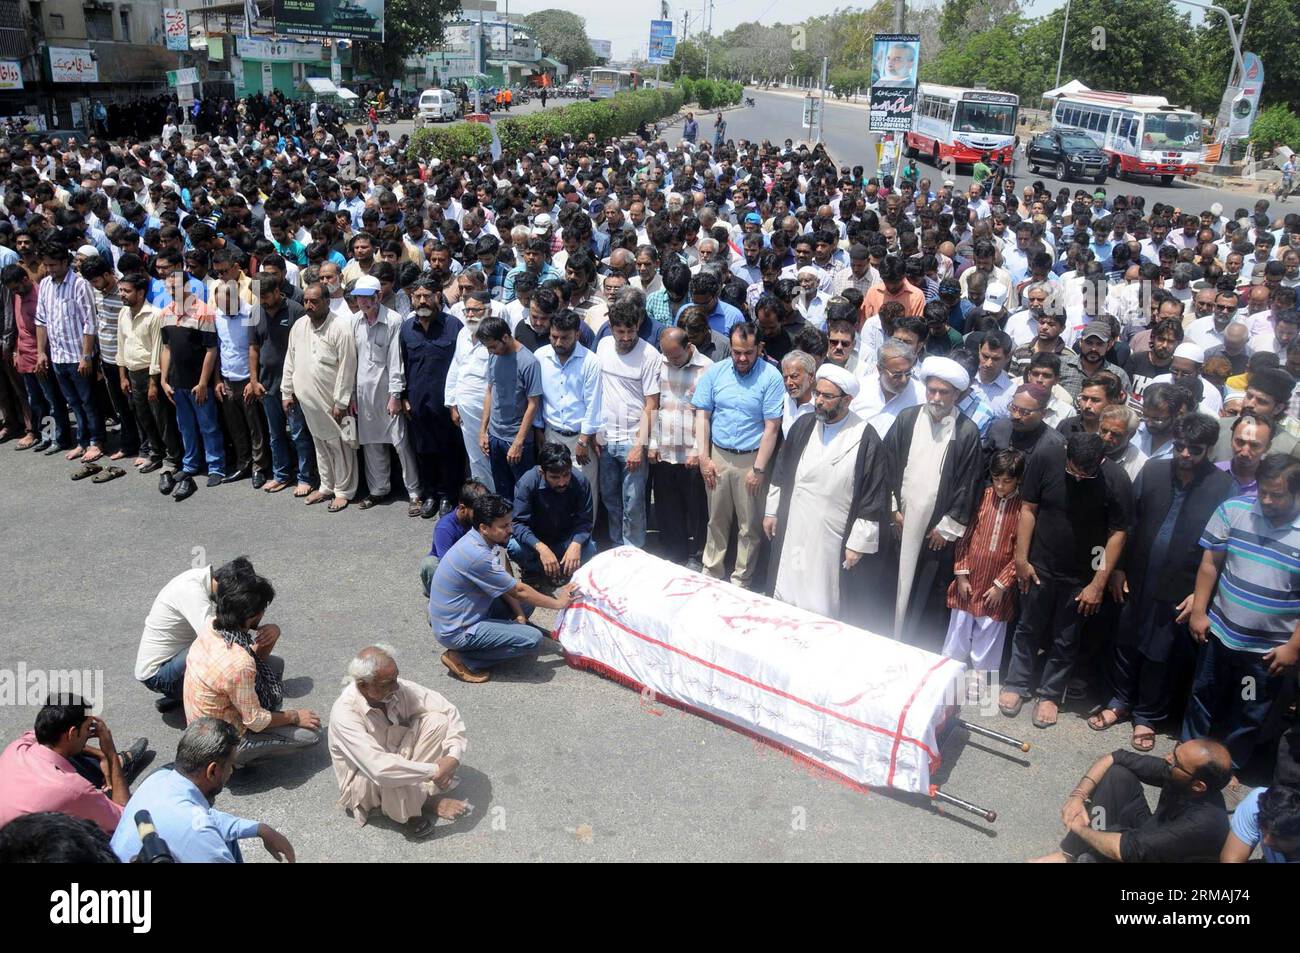 (140712) -- KARACHI, 12. Juli 2014 (Xinhua) -- Menschen nehmen an der Beerdigung eines Opfers Teil, das Opfer eines Zieles getötet hat, in der südpakistanischen Hafenstadt Karachi, 12. Juli 2014. Schätzungen zufolge sind seit Beginn der Operation gegen Militante im September letzten Jahres in Pakistans südlicher Hafenstadt Karatschi bei verschiedenen Vorfällen von Tötungen von Zielen 1.685 Menschen getötet worden, sagten die Beamten am Freitag. (Xinhua/Masroor) PAKISTAN-KARACHI-FUNERAL PUBLICATIONxNOTxINxCHN Karachi 12. Juli 2014 XINHUA-Prominente nehmen an der Beerdigung eines tödlichen Opfers eines Ziels in der südpakistanischen Hafenstadt Karachi vom 12. Juli 2014 bis EST Teil Stockfoto